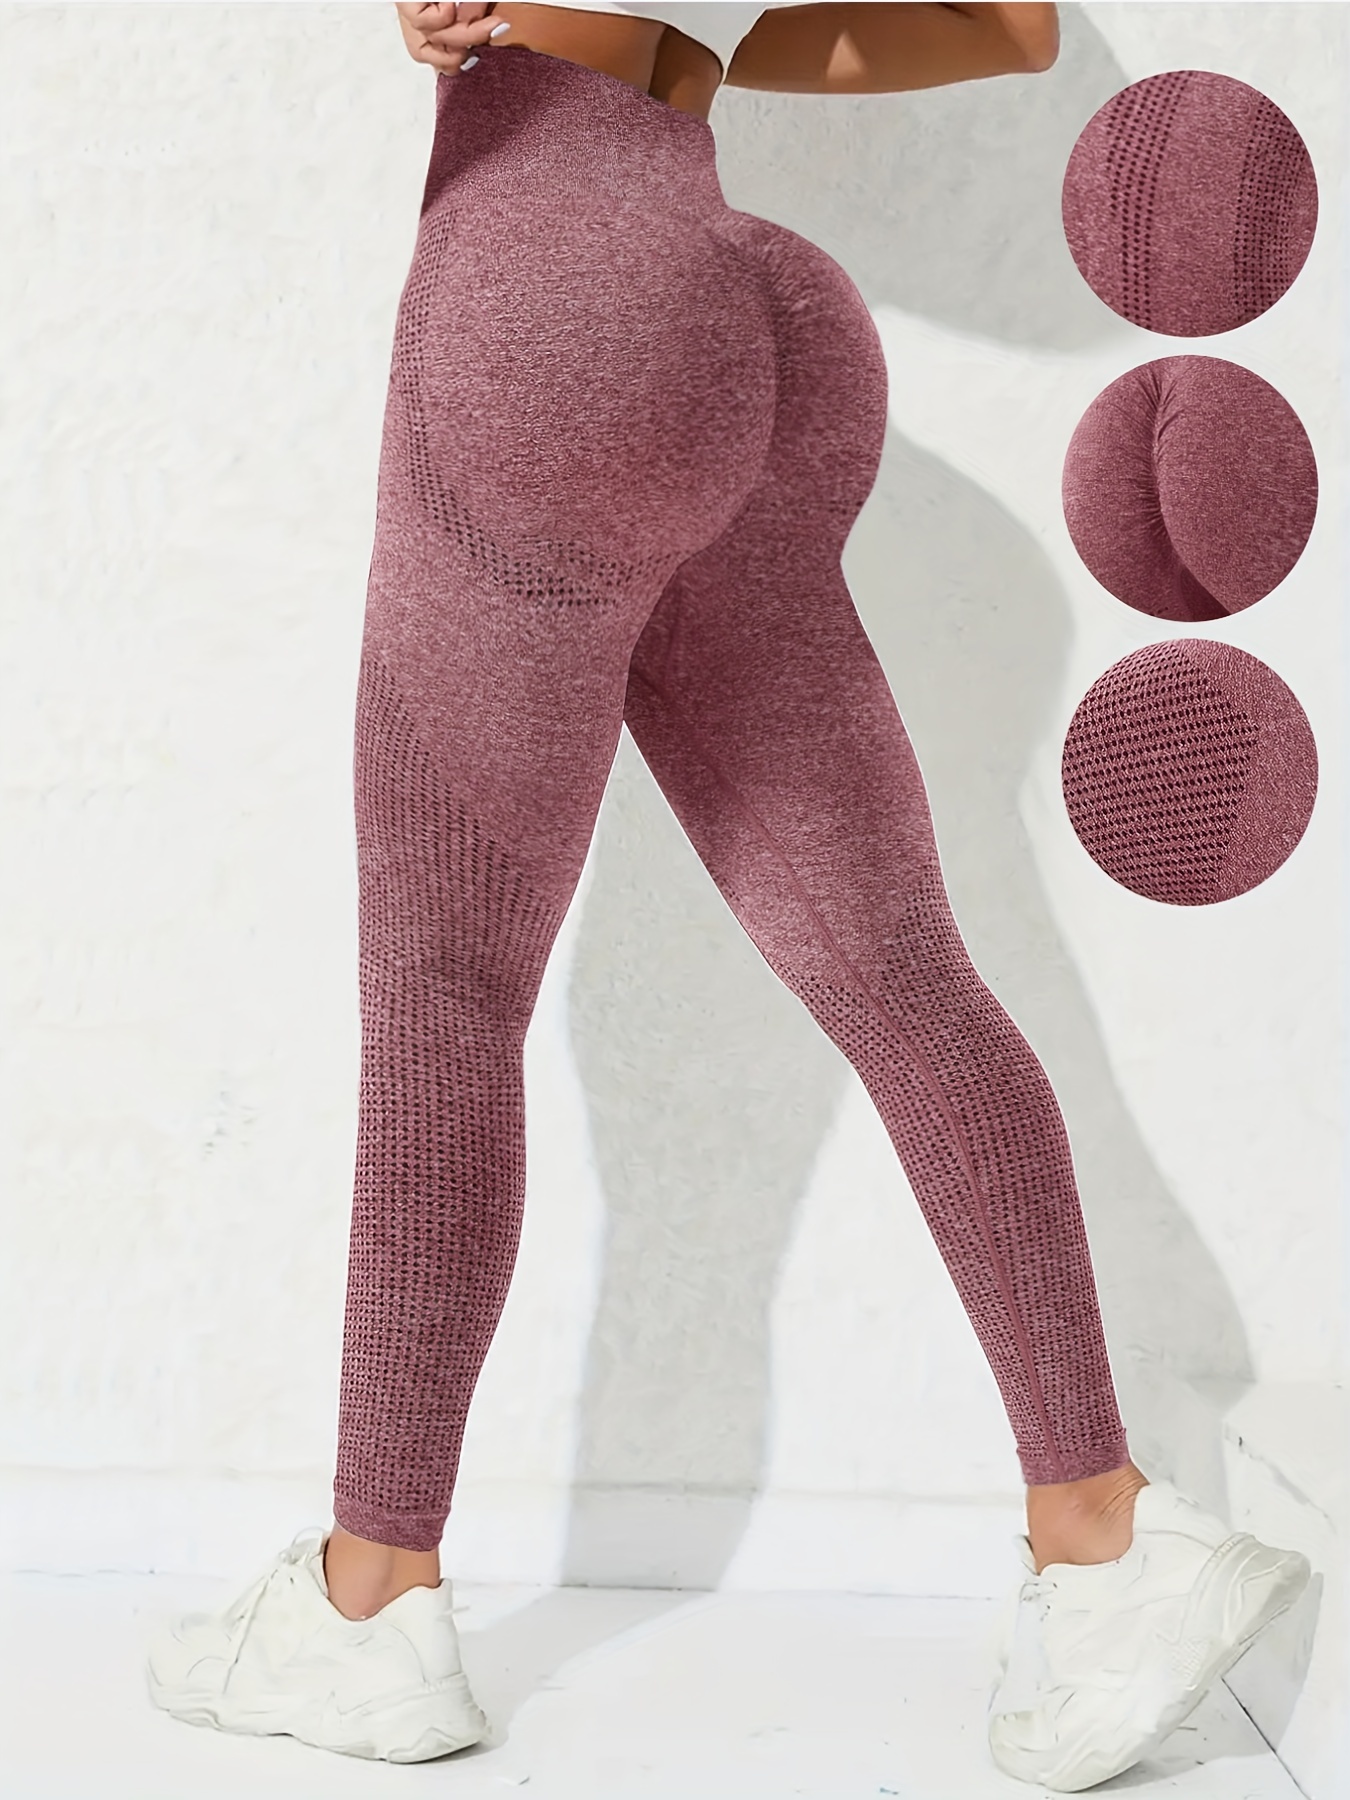 High Waist Seamless Offline Yoga Pants For Women Squat Proof